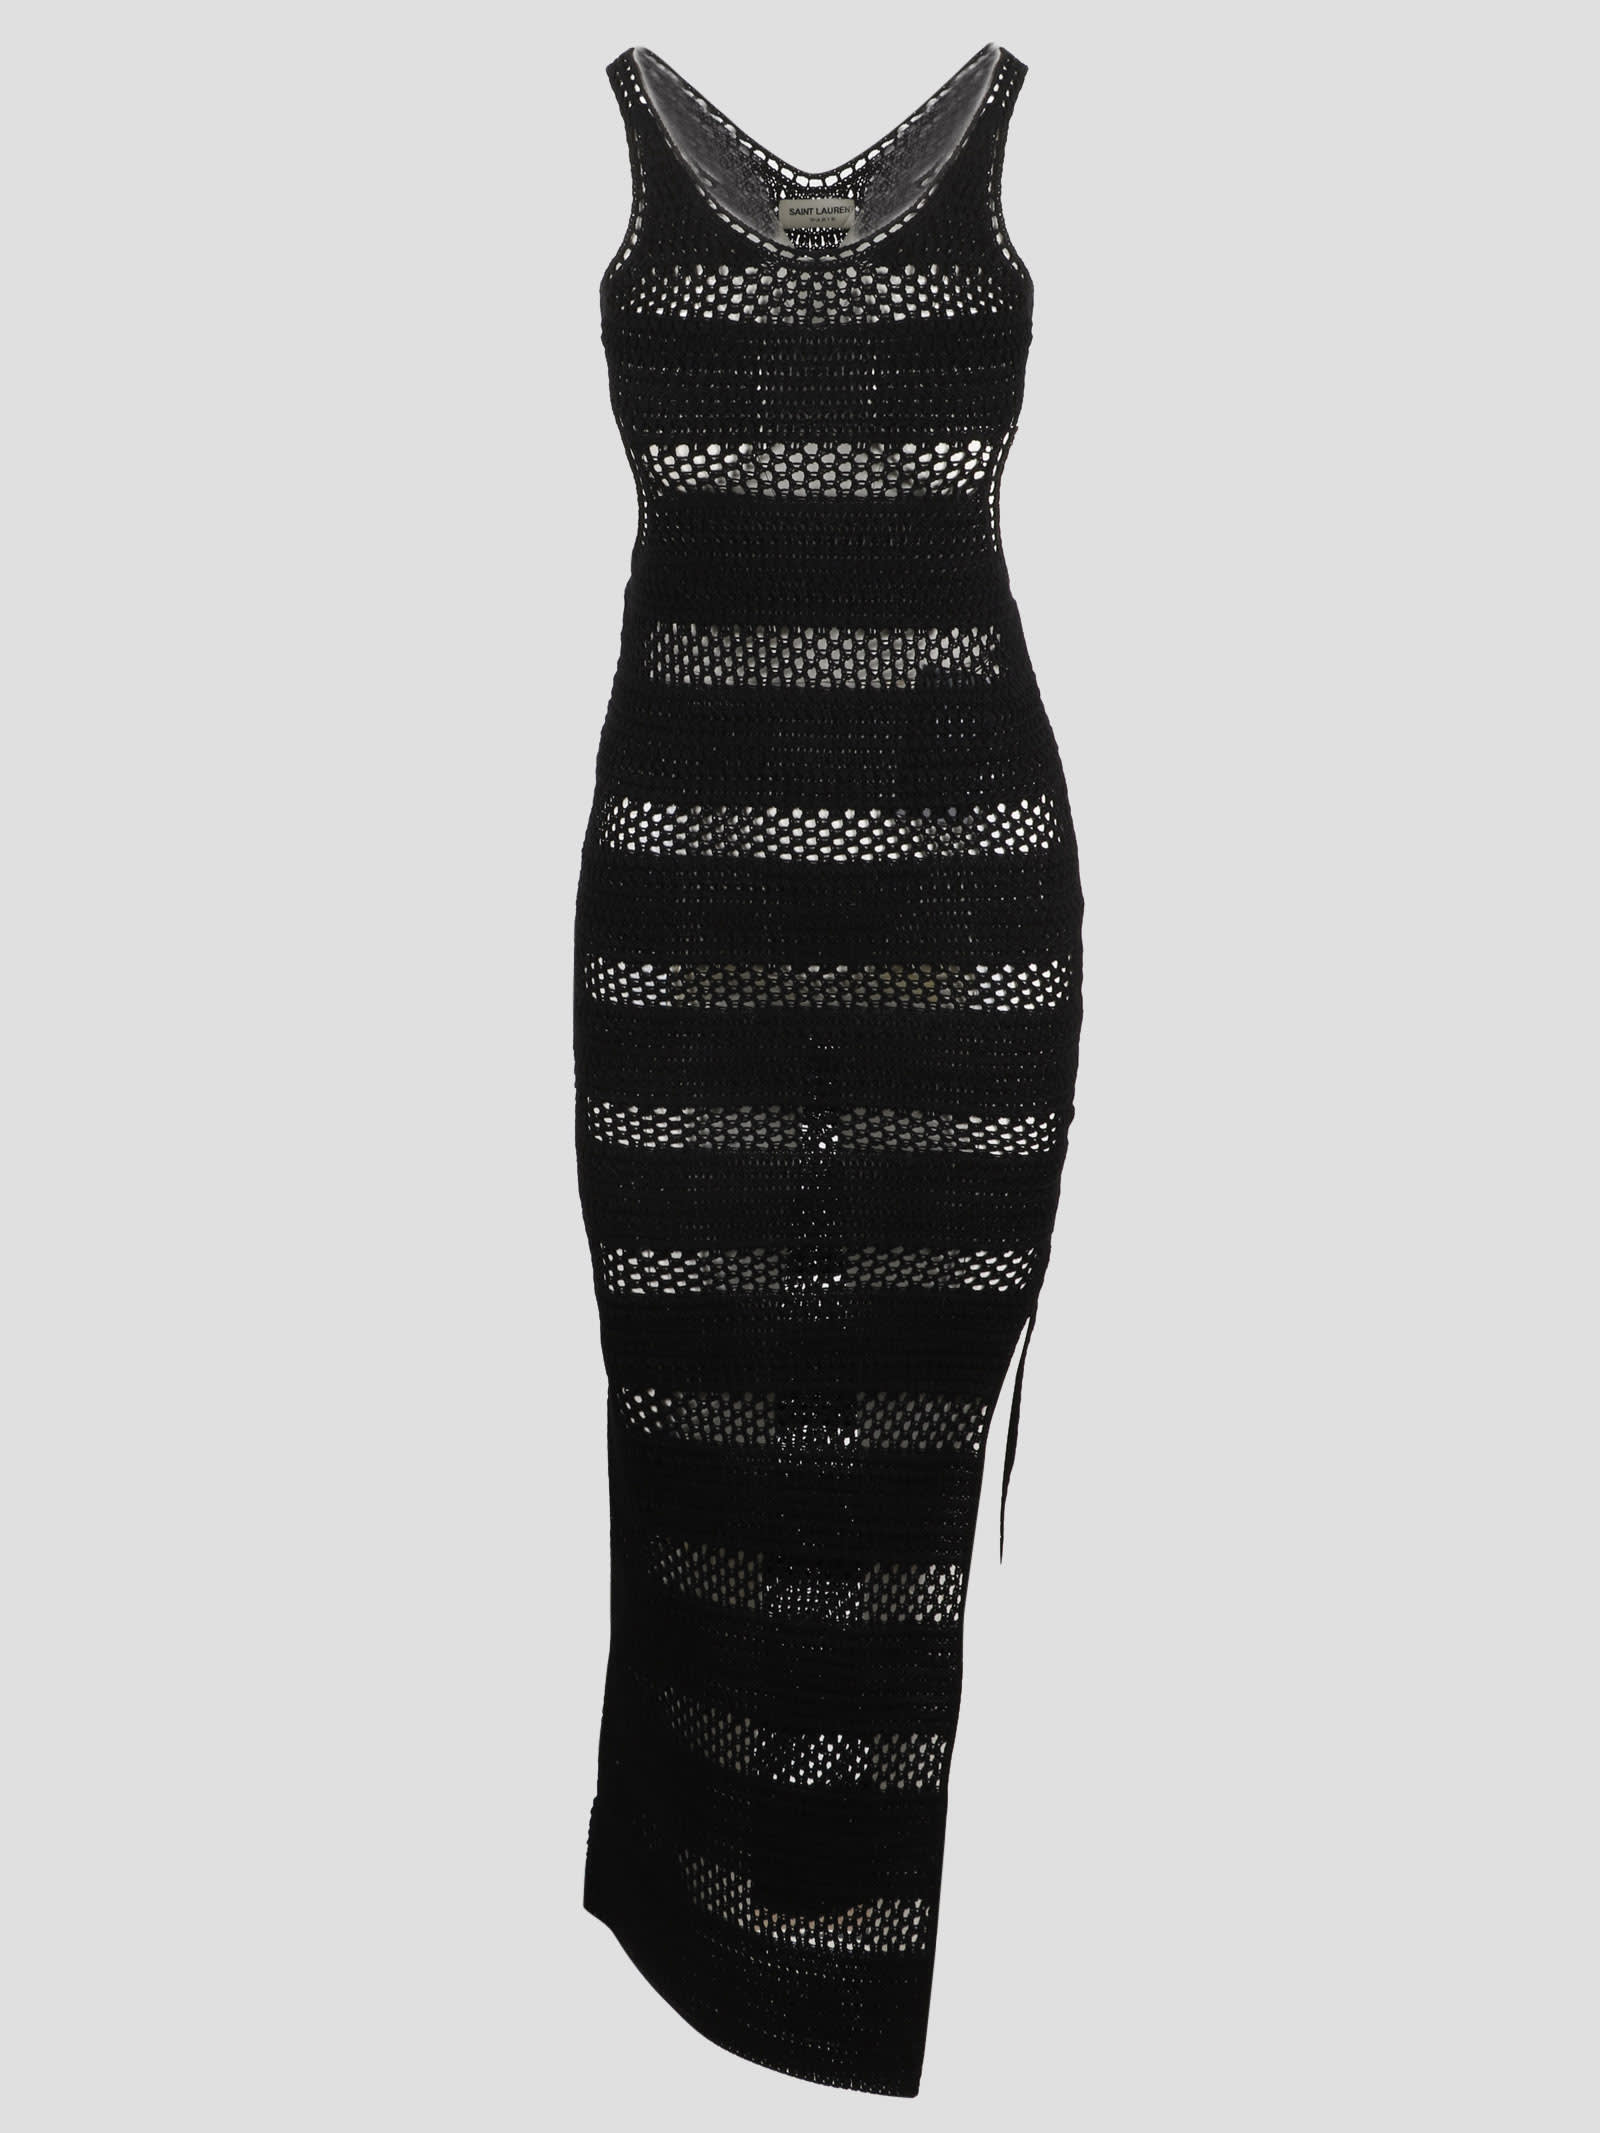 Saint Laurent Crochet Cut Out Dress